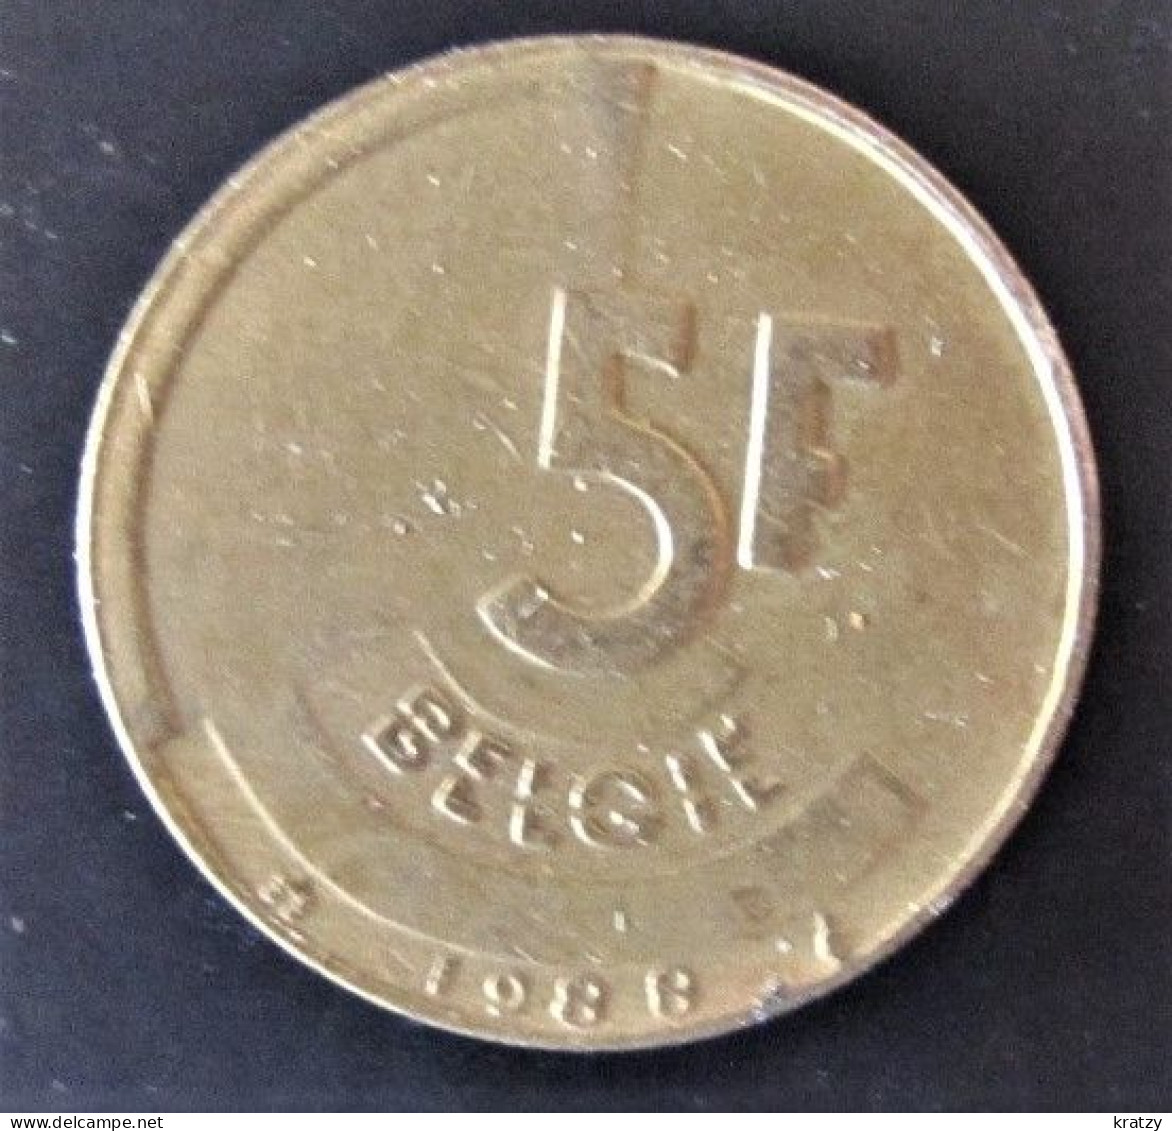 BELGIQUE - Pièce De 5 Francs - Cupro-nickel-aluminium - 1988 - 20 Frank